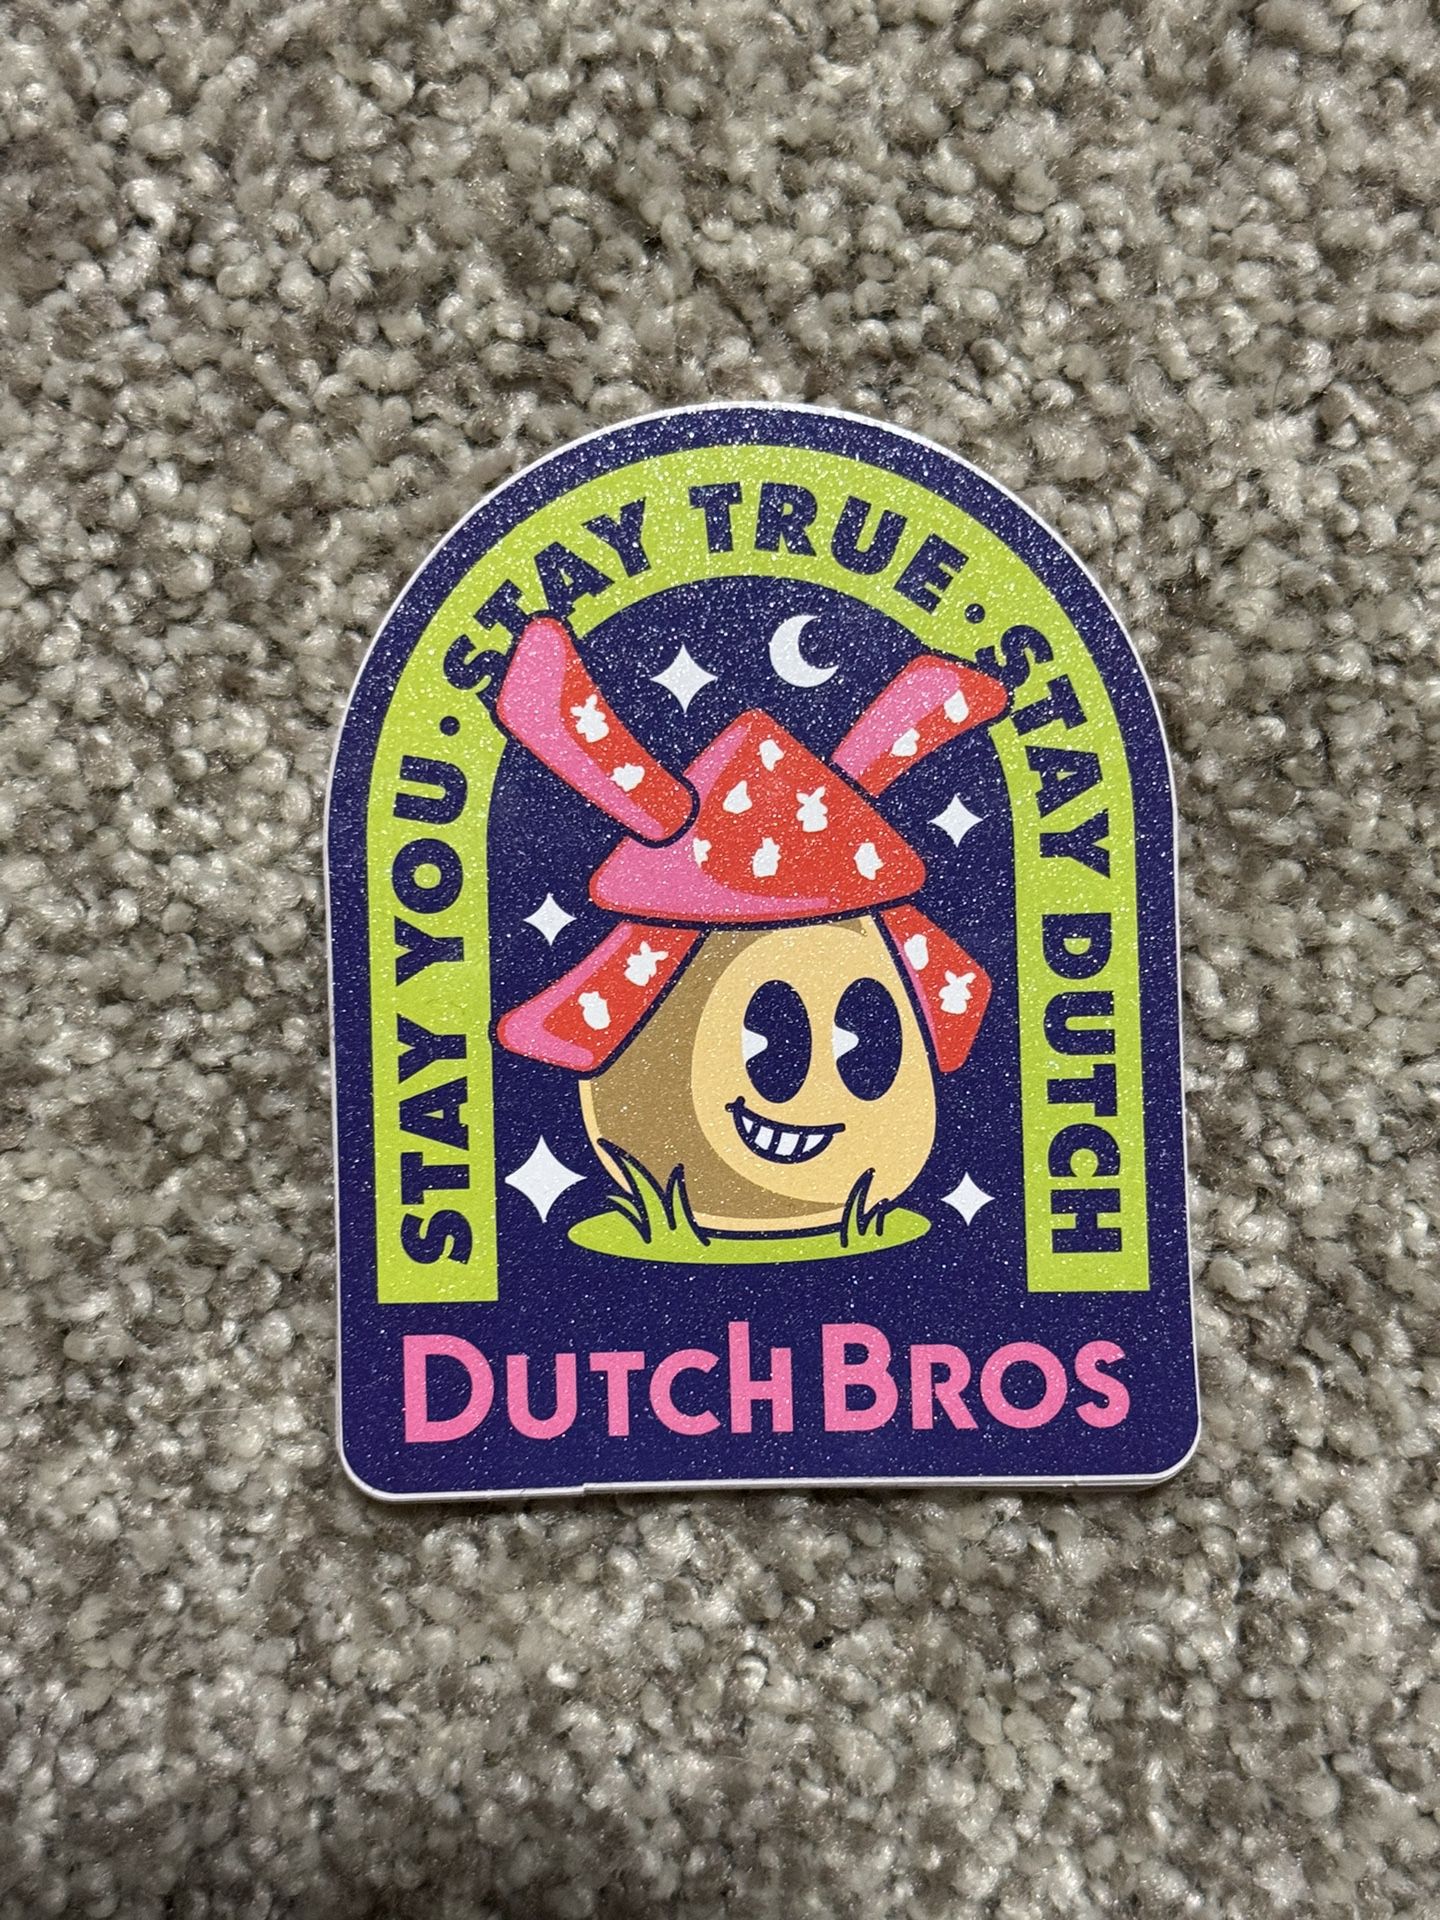 Dutch Bros “Stay Dutch Mushroom” Sticker